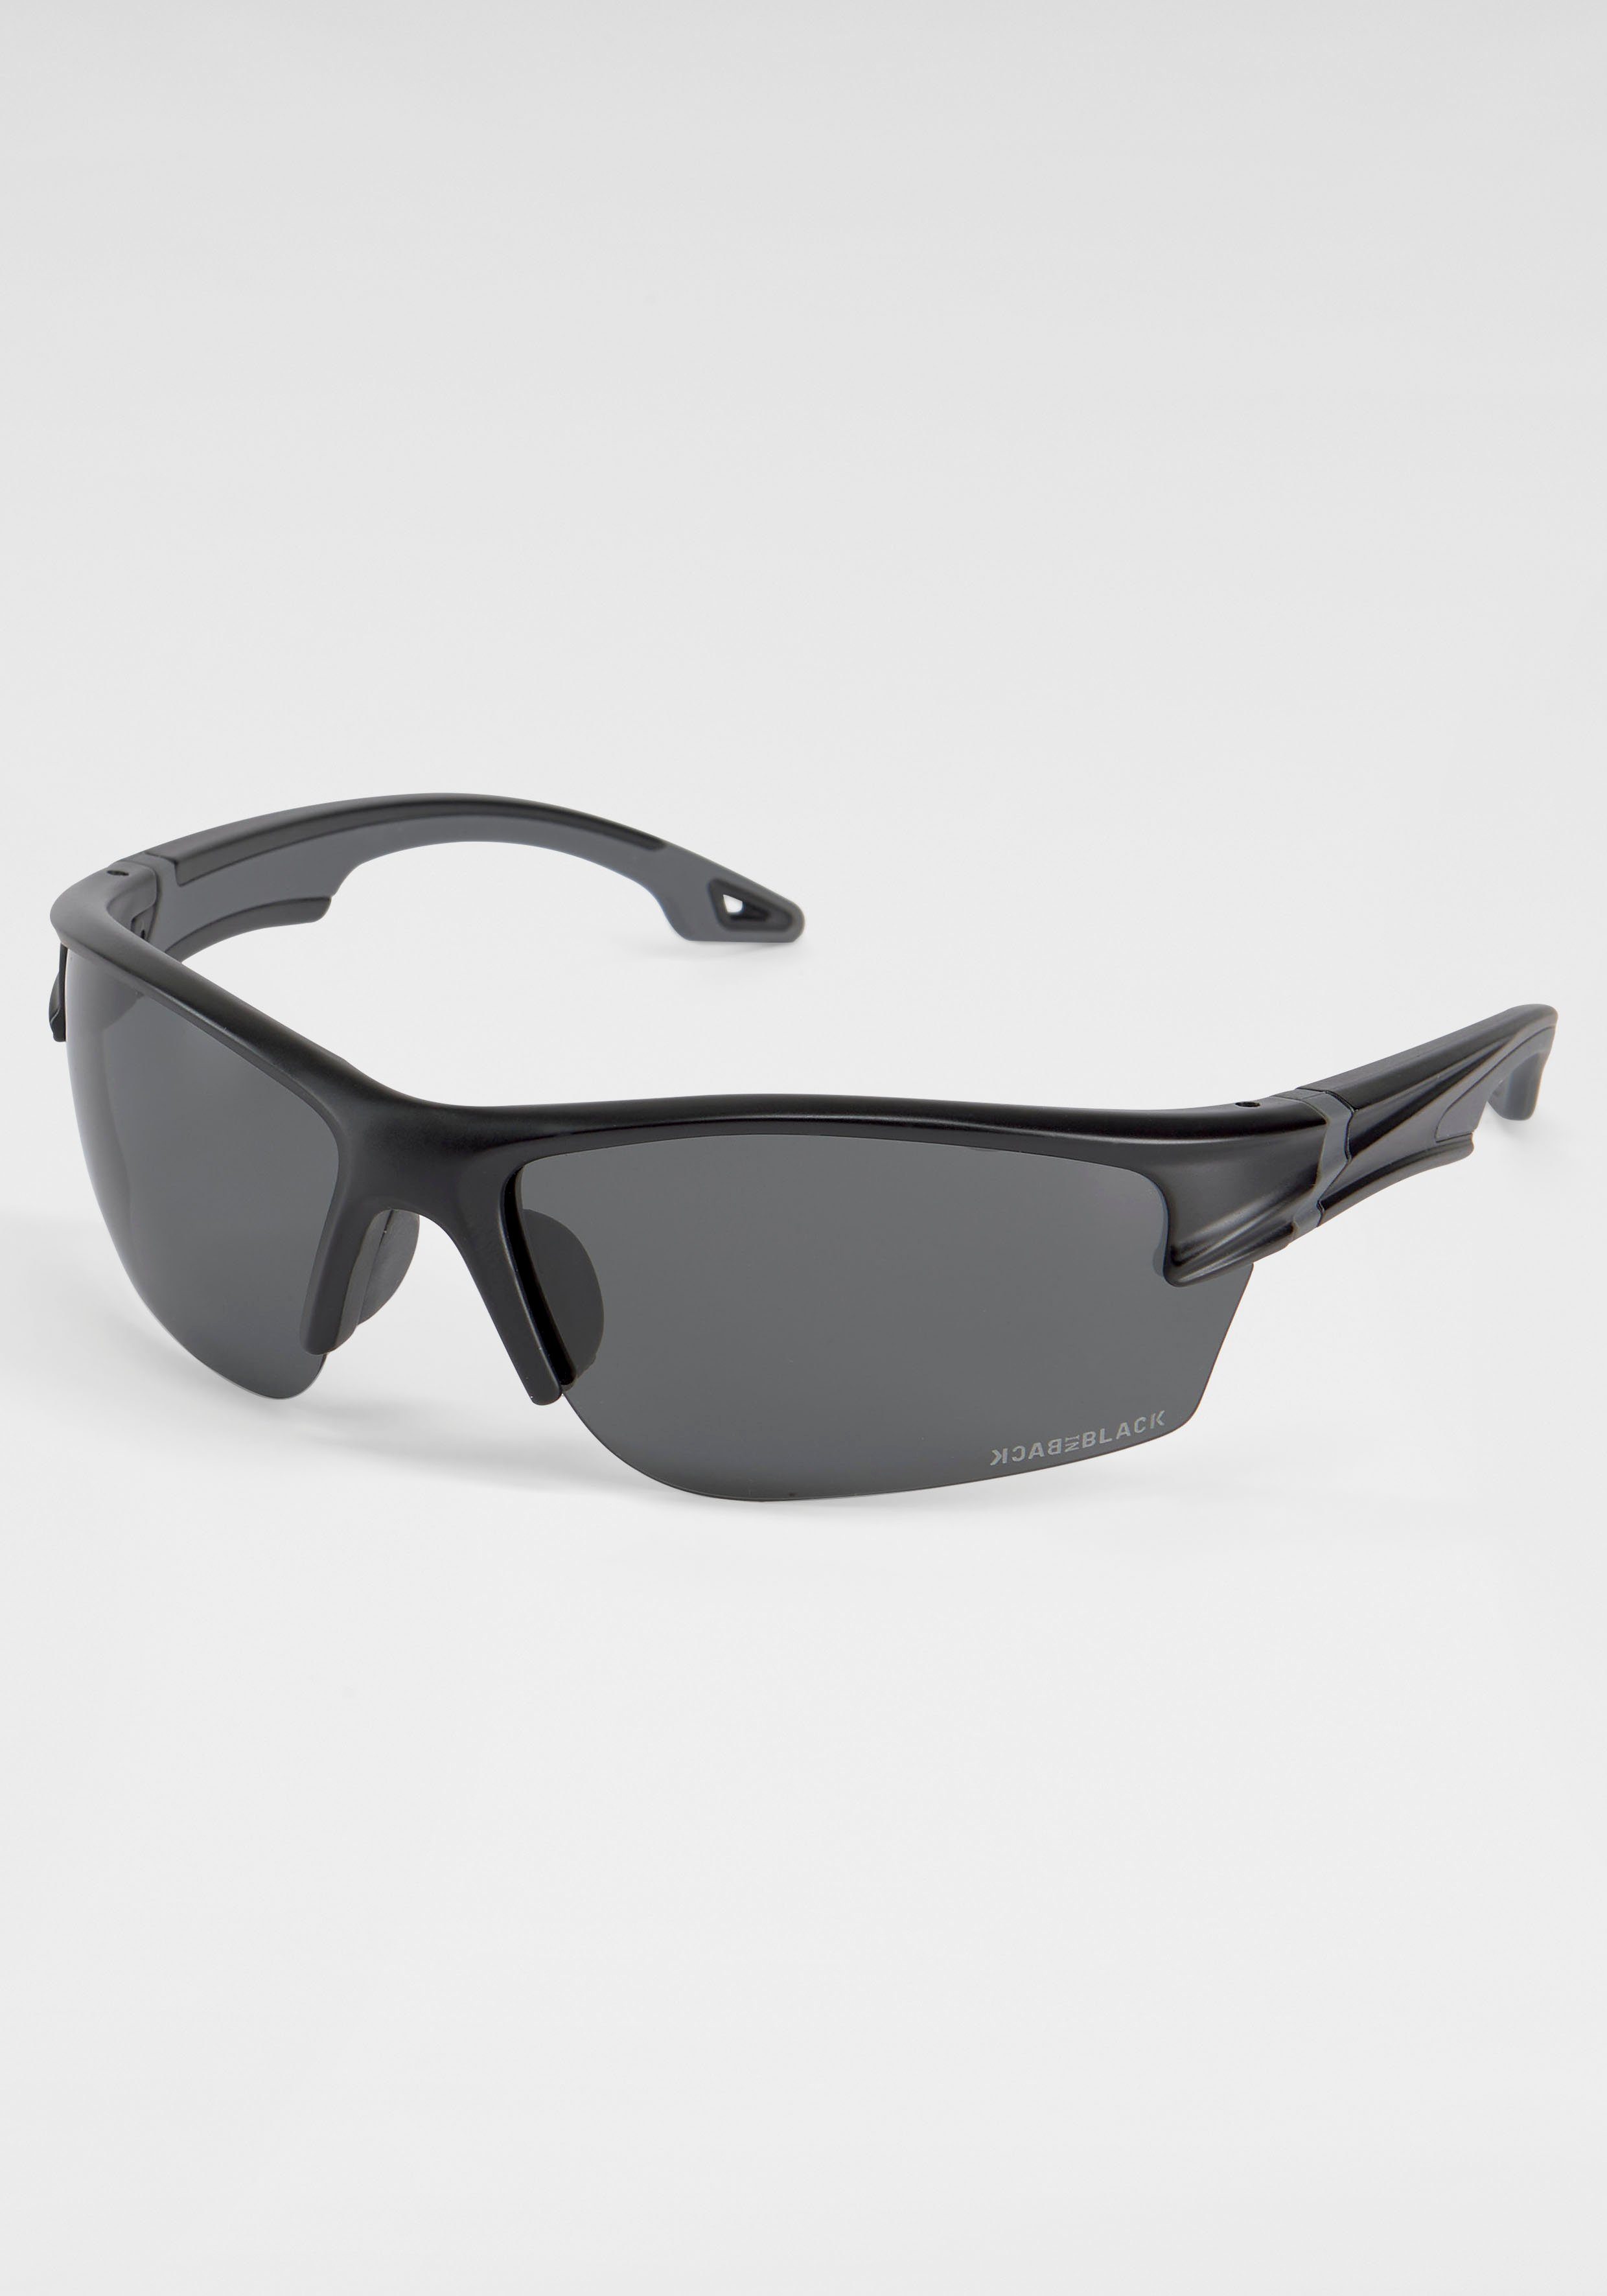 BACK IN BLACK Eyewear Sonnenbrille, Sportliche Sonnenbrille